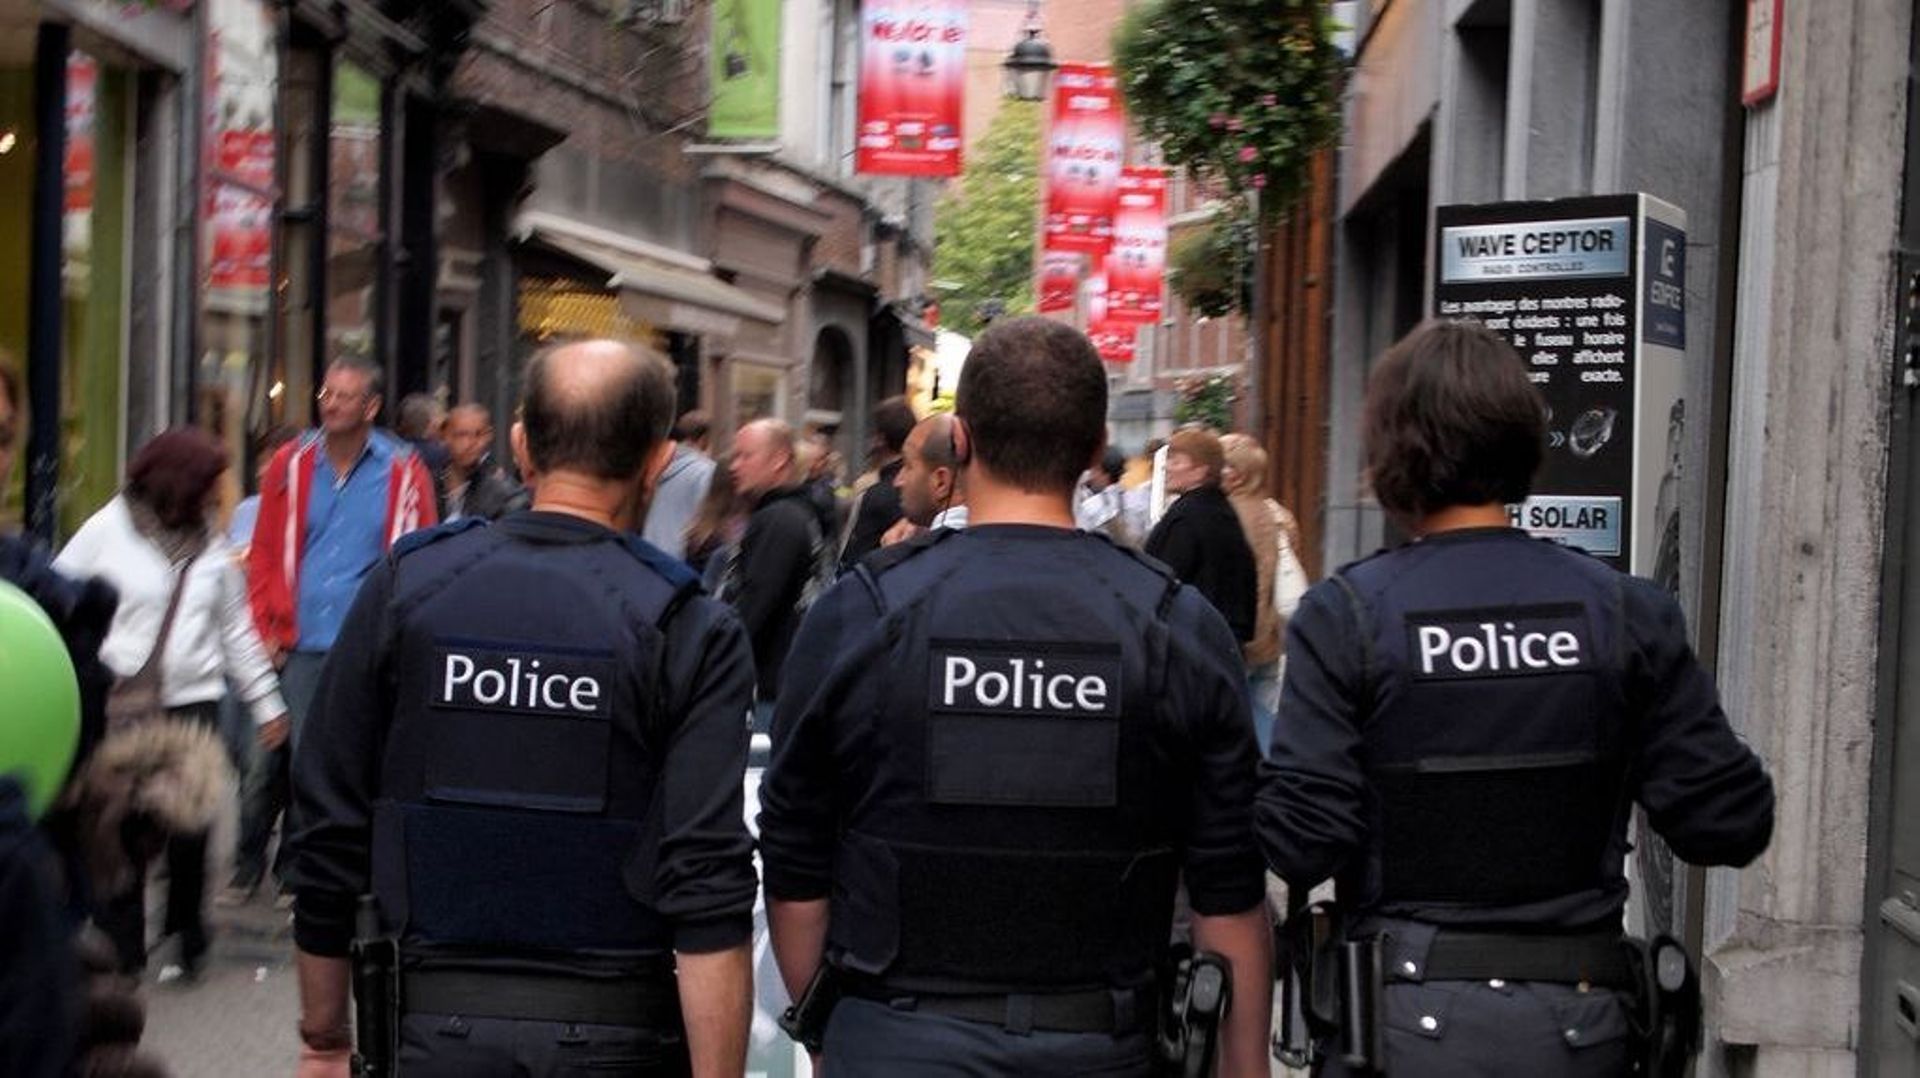 La police de Namur a mené cet été 5 opérations de sécurisation, principalement dans le haut de la ville. (Illustration)